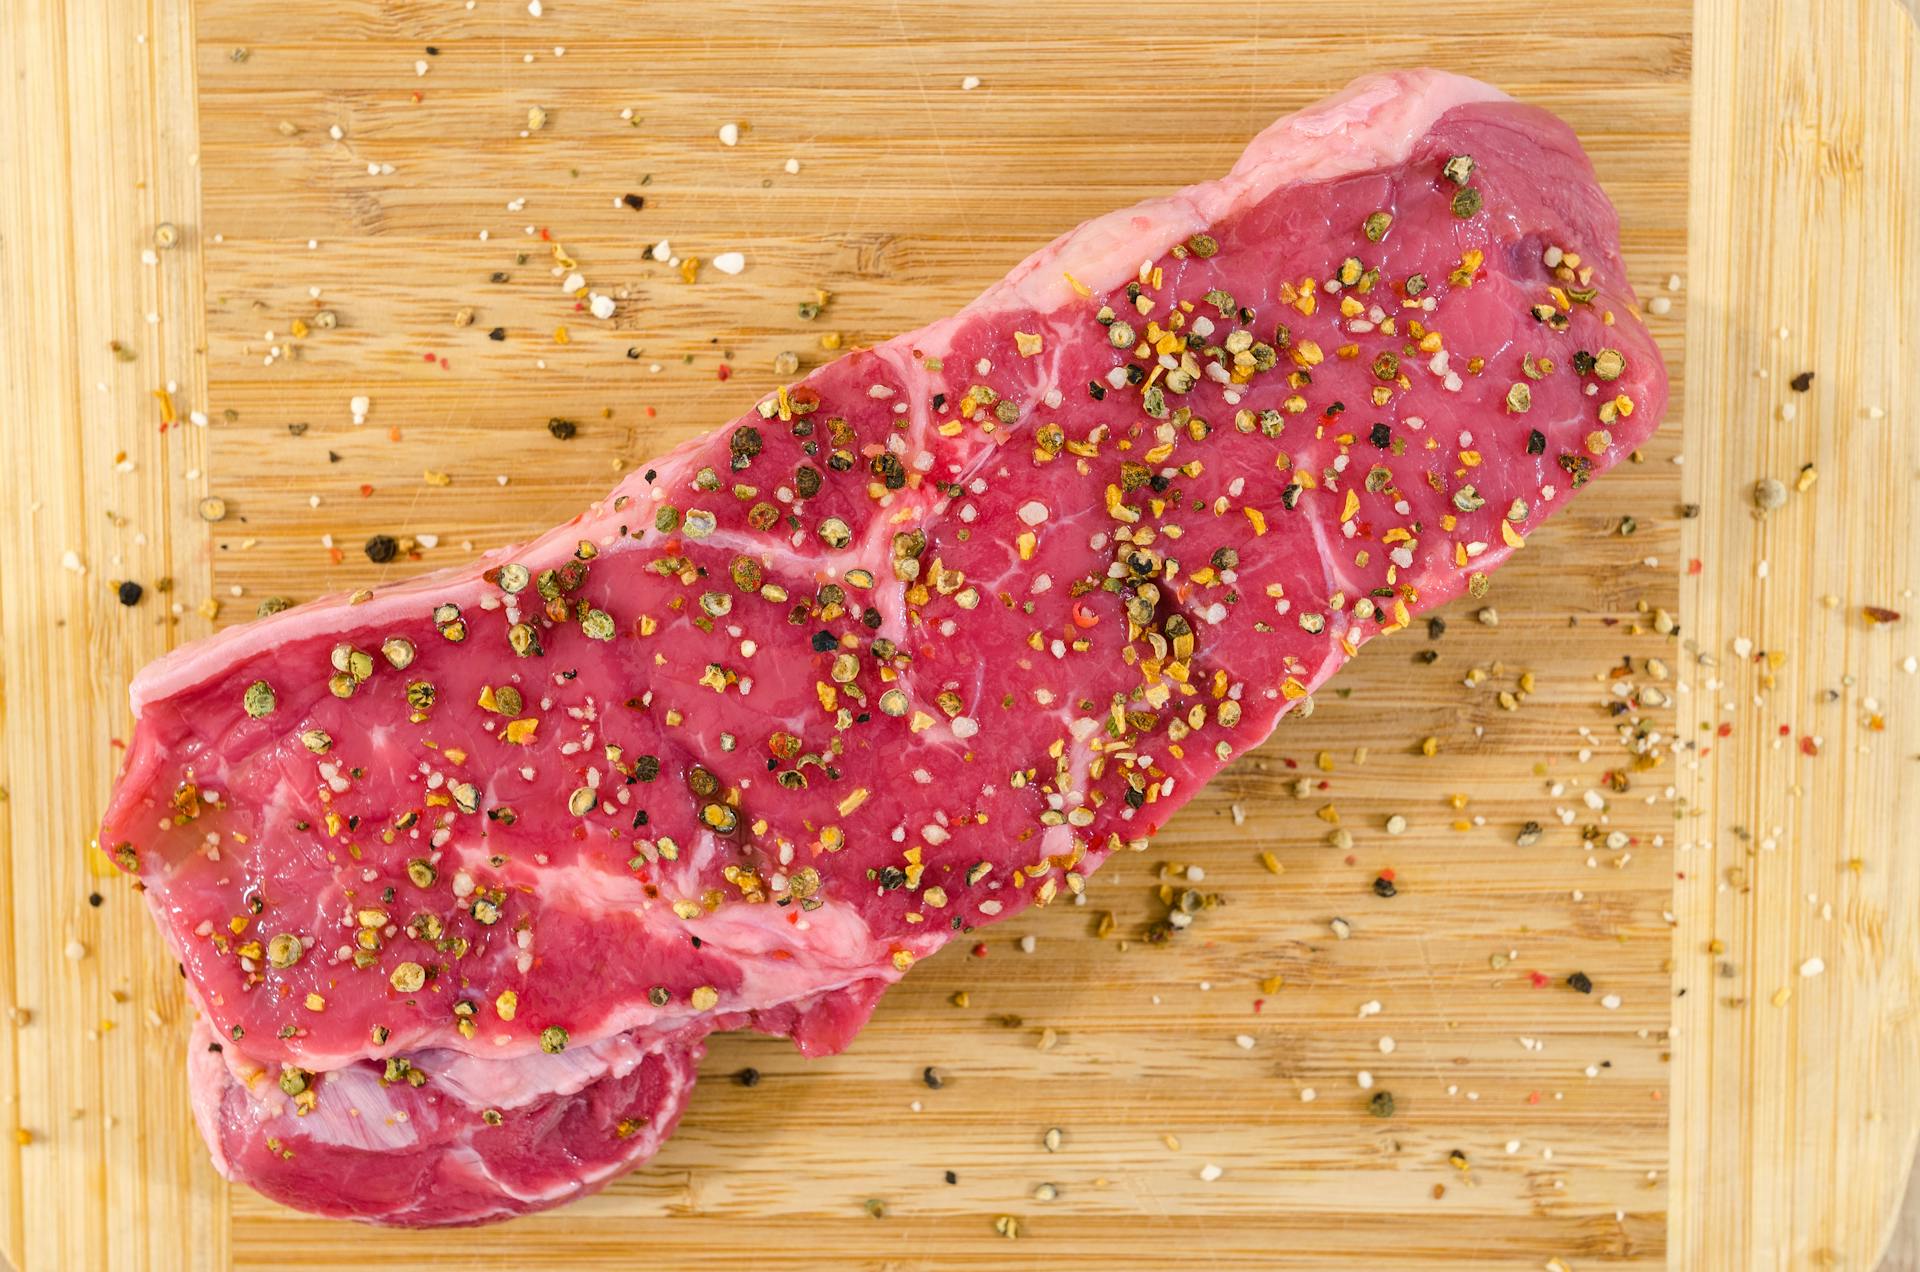 How Long Can Steak Be In The Fridge? | Fridge.com